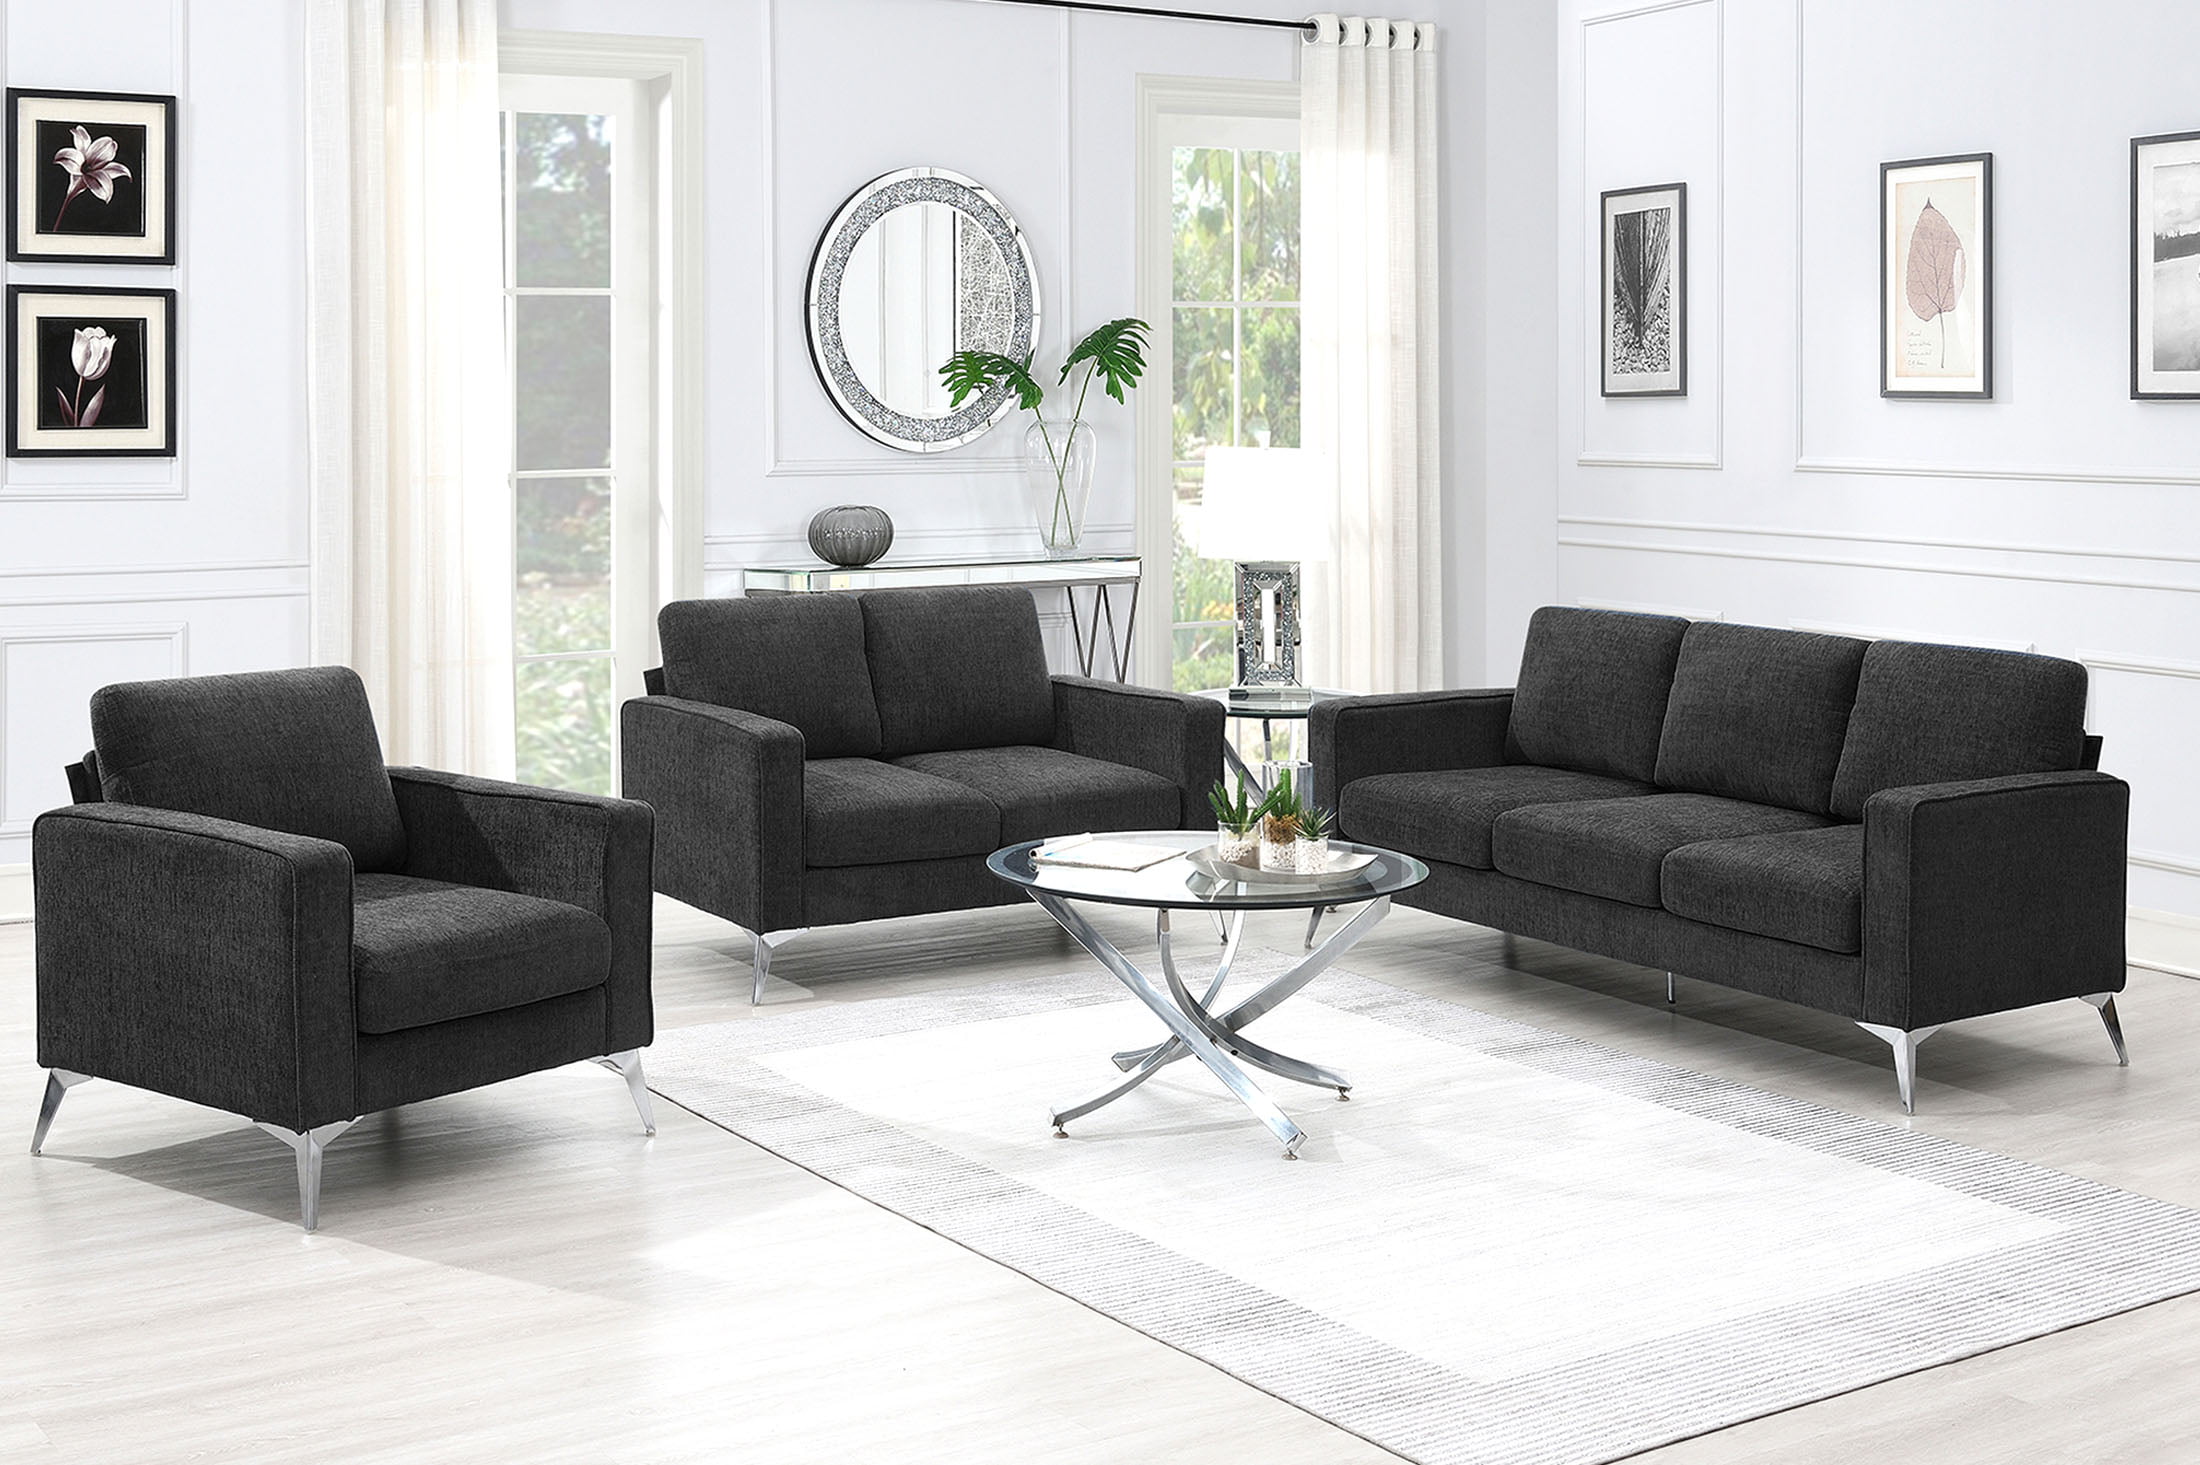 Linen Upholstered 3-Piece Sofa Sets - GS000334AAR